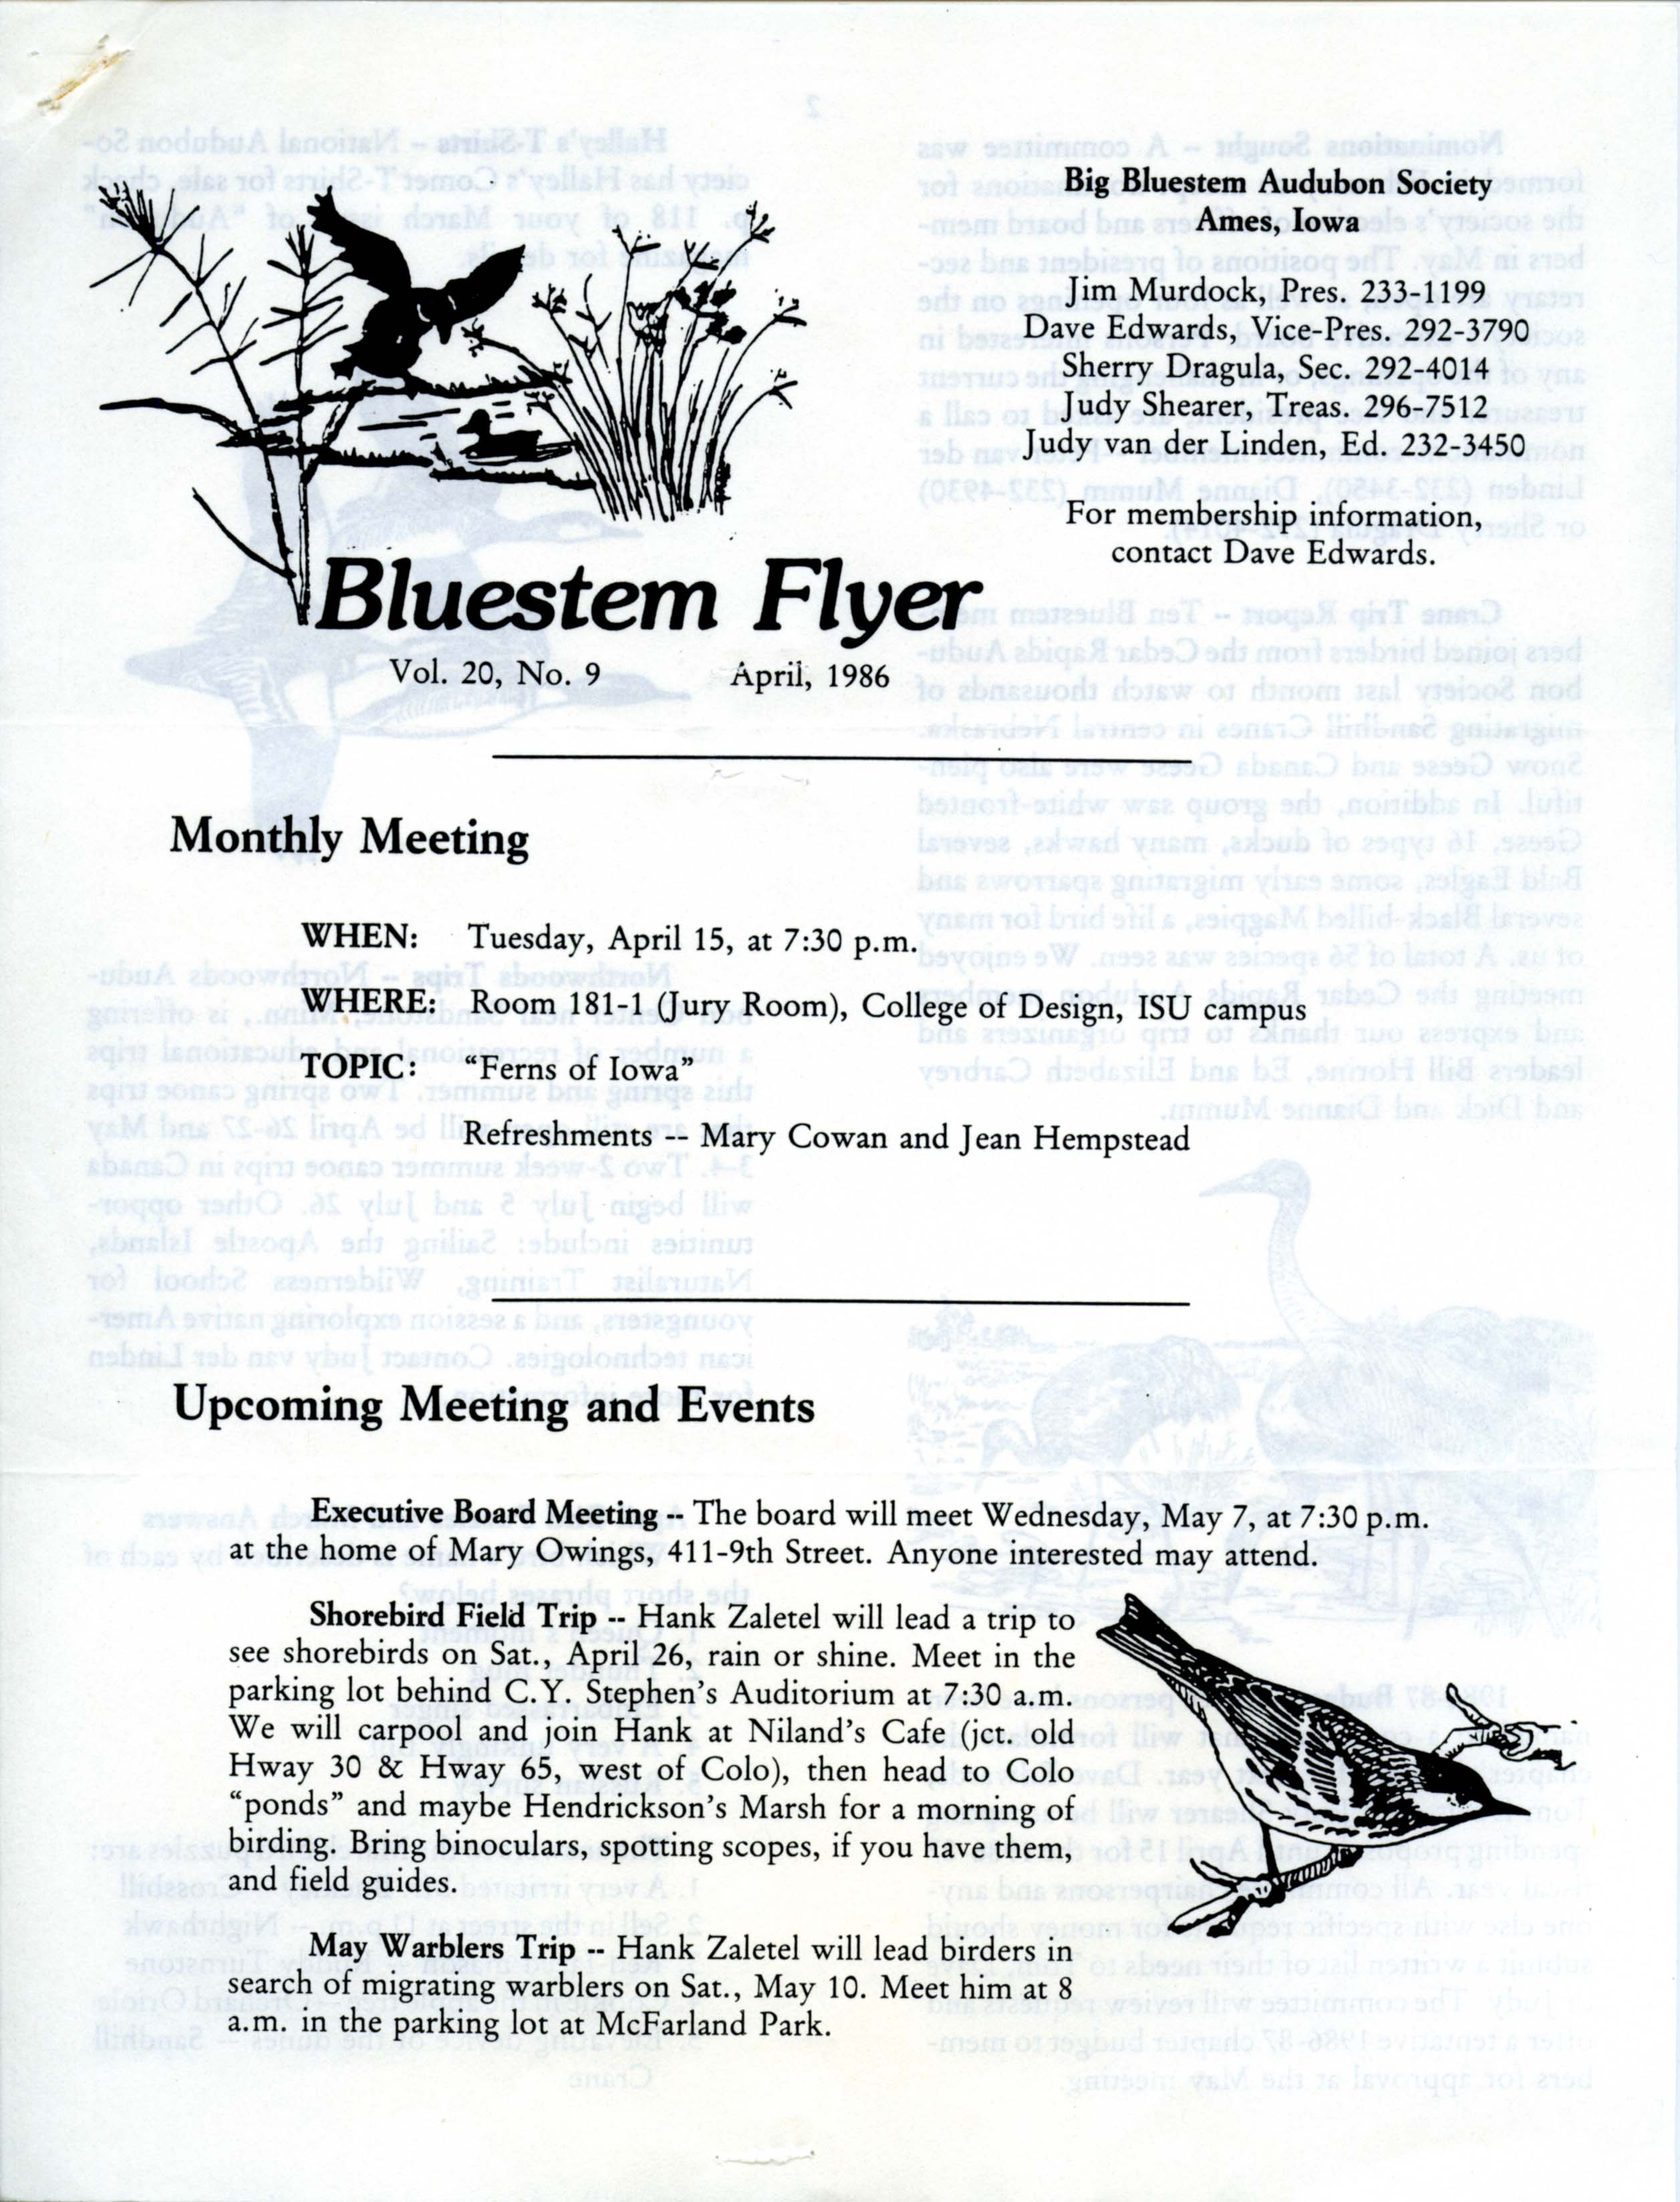 Bluestem Flyer, Volume 20, Number 9 [sic], April 1986